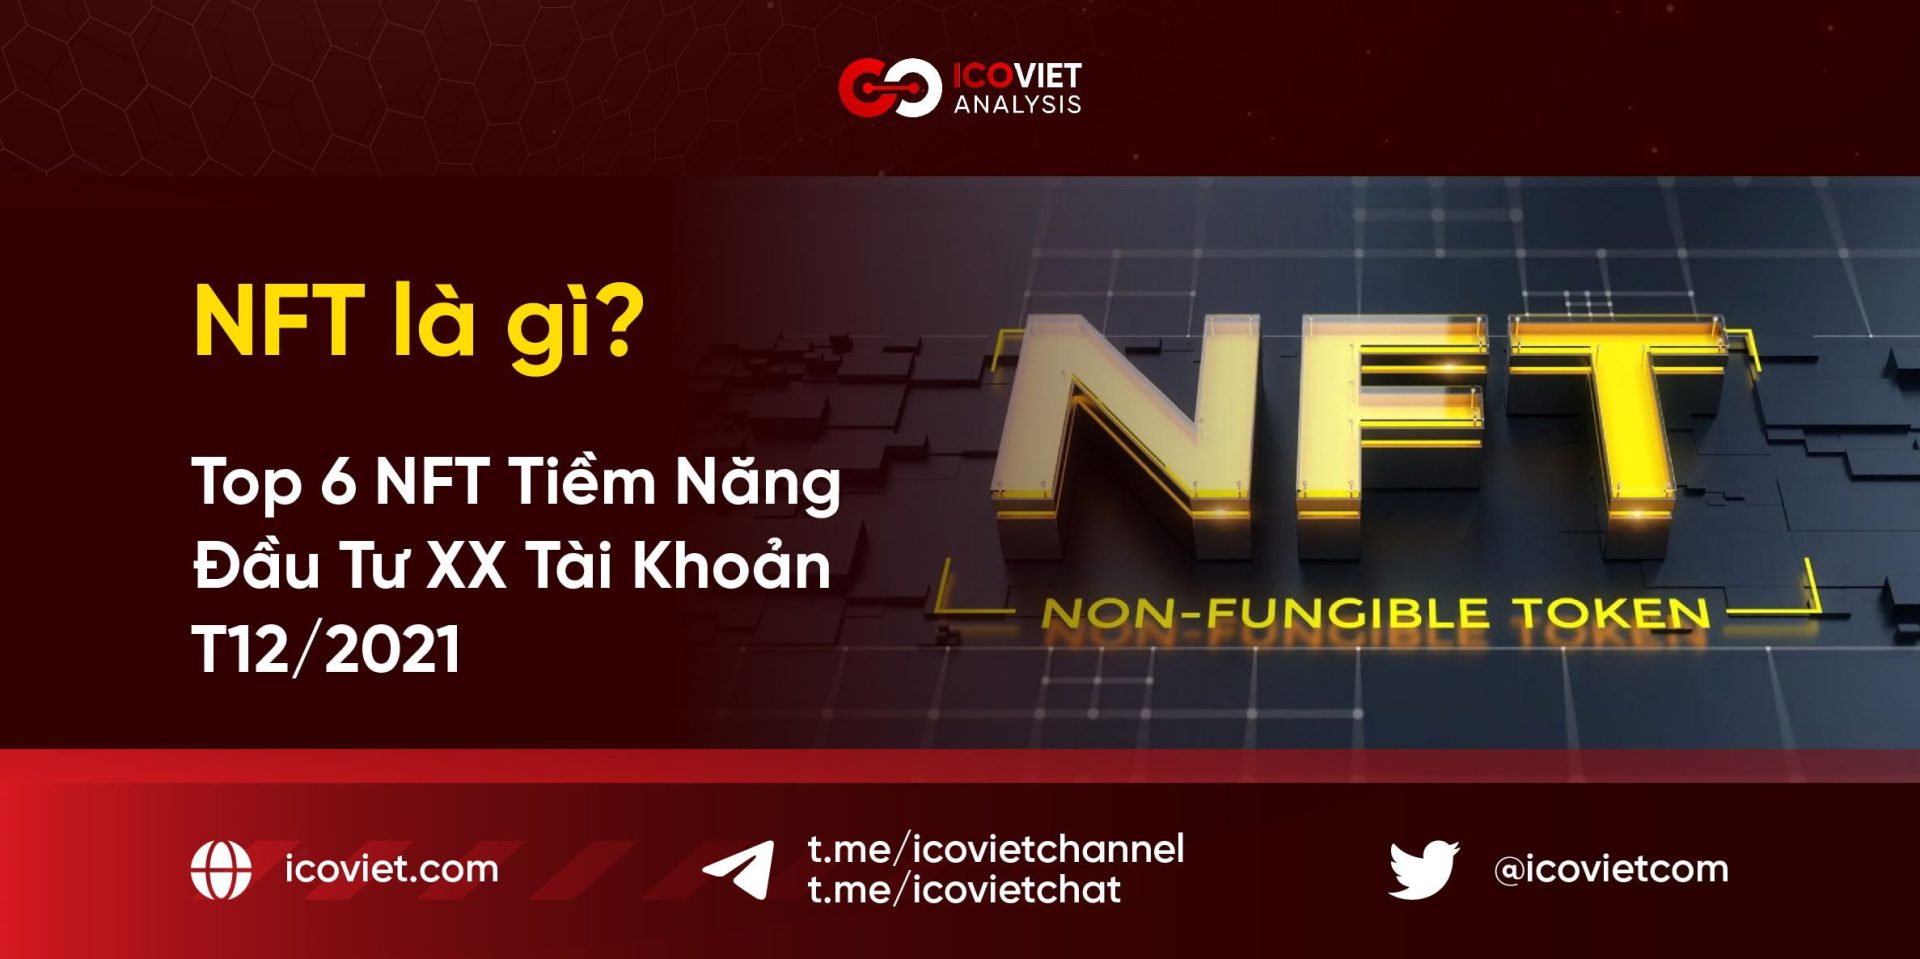 NFT là gì? Top 6 dự án NFT Tiềm Năng Đáng Đầu Tư Nhất